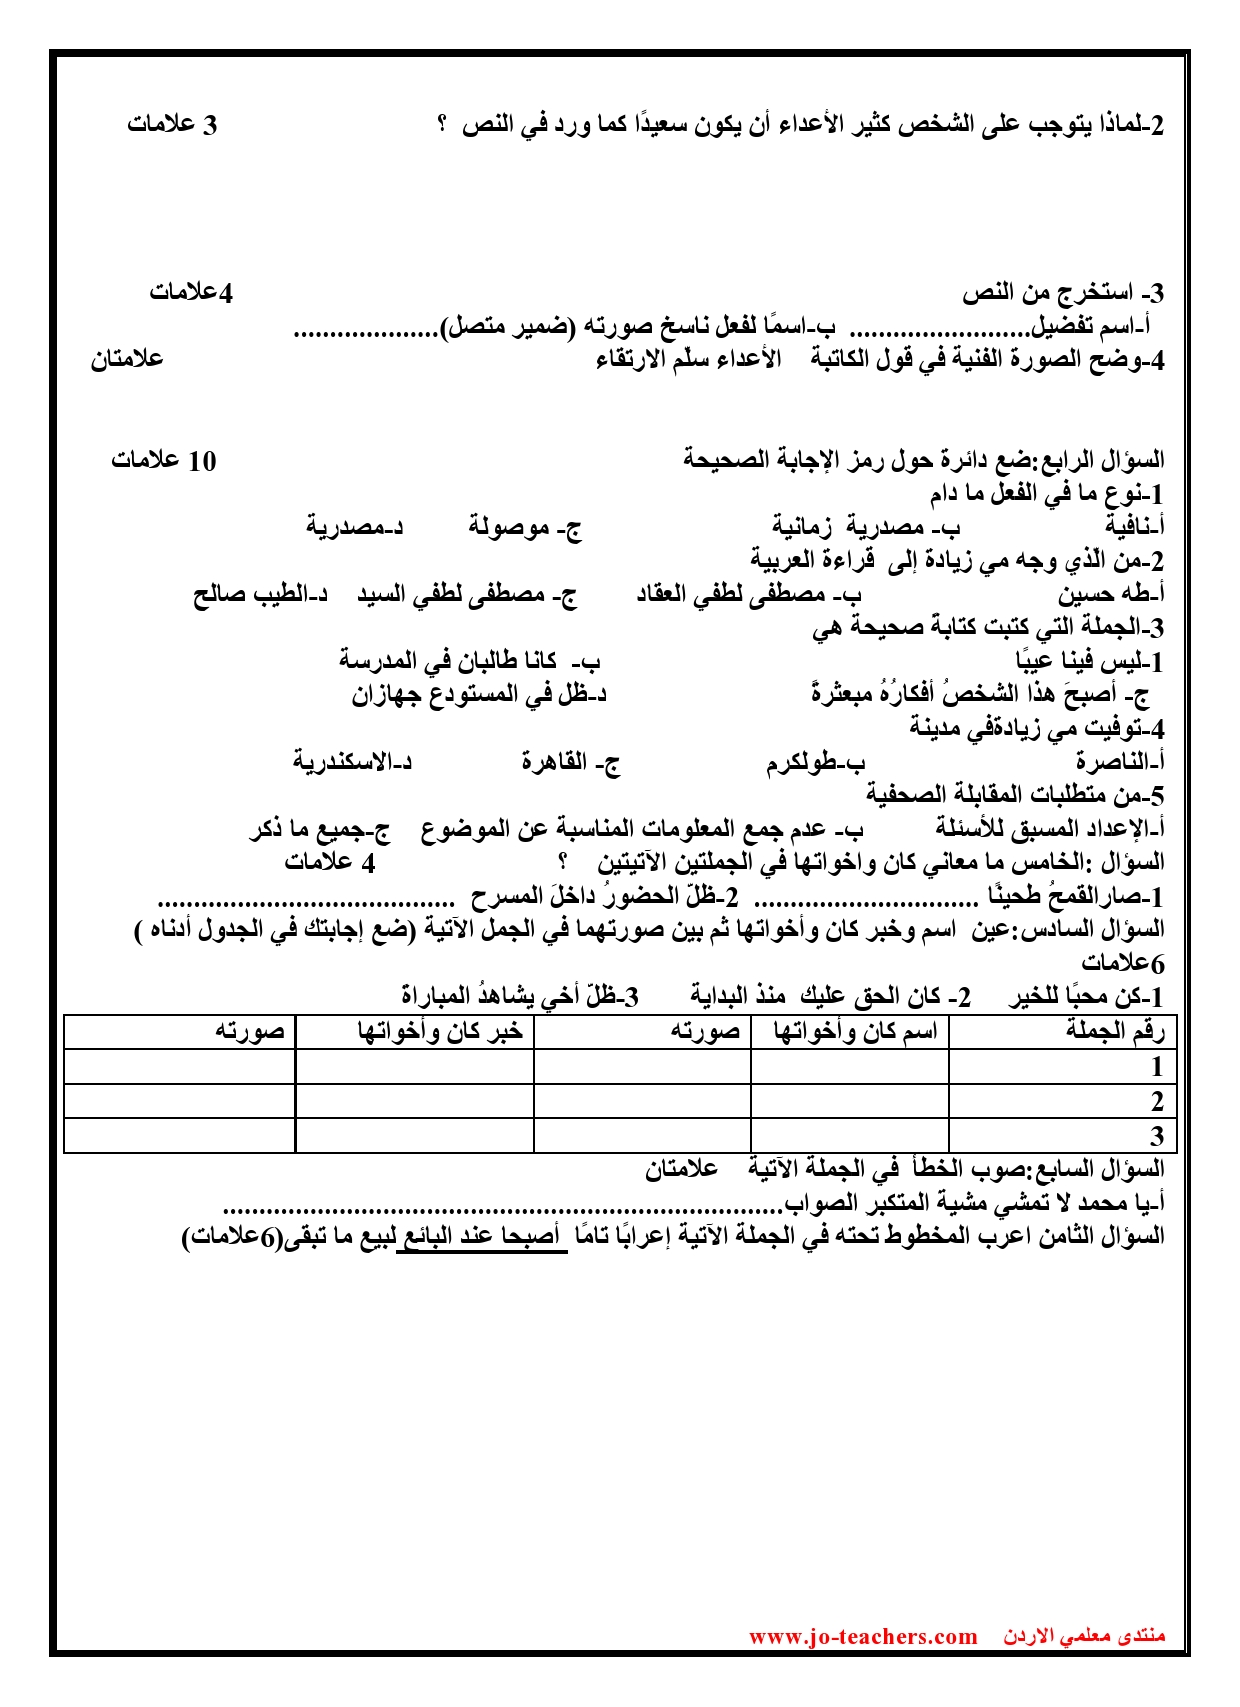 MTEwNjAxاختبار الغة العربية الشهر الثاني للصف التاسع الفصل الاول 201902